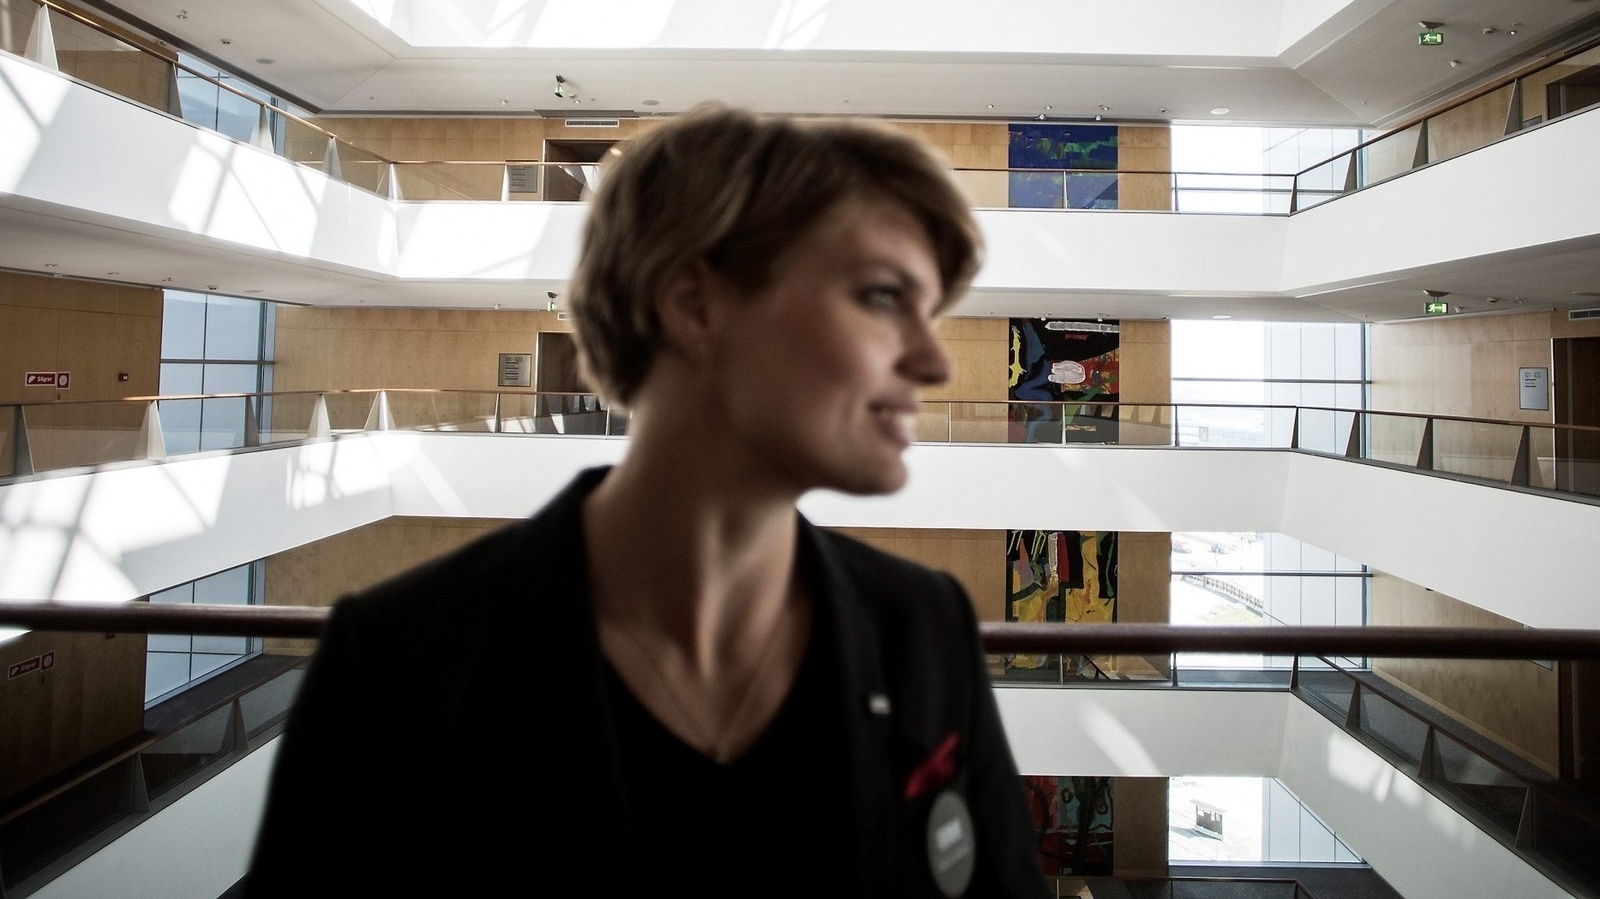 Cecilie Belling Thomsen är pr-ansvarig på hotellet (Marketing Manager). Bakom henne loftgångar som bildar ett atrium mitt i hotellet. Foto: Jörgen Johansson